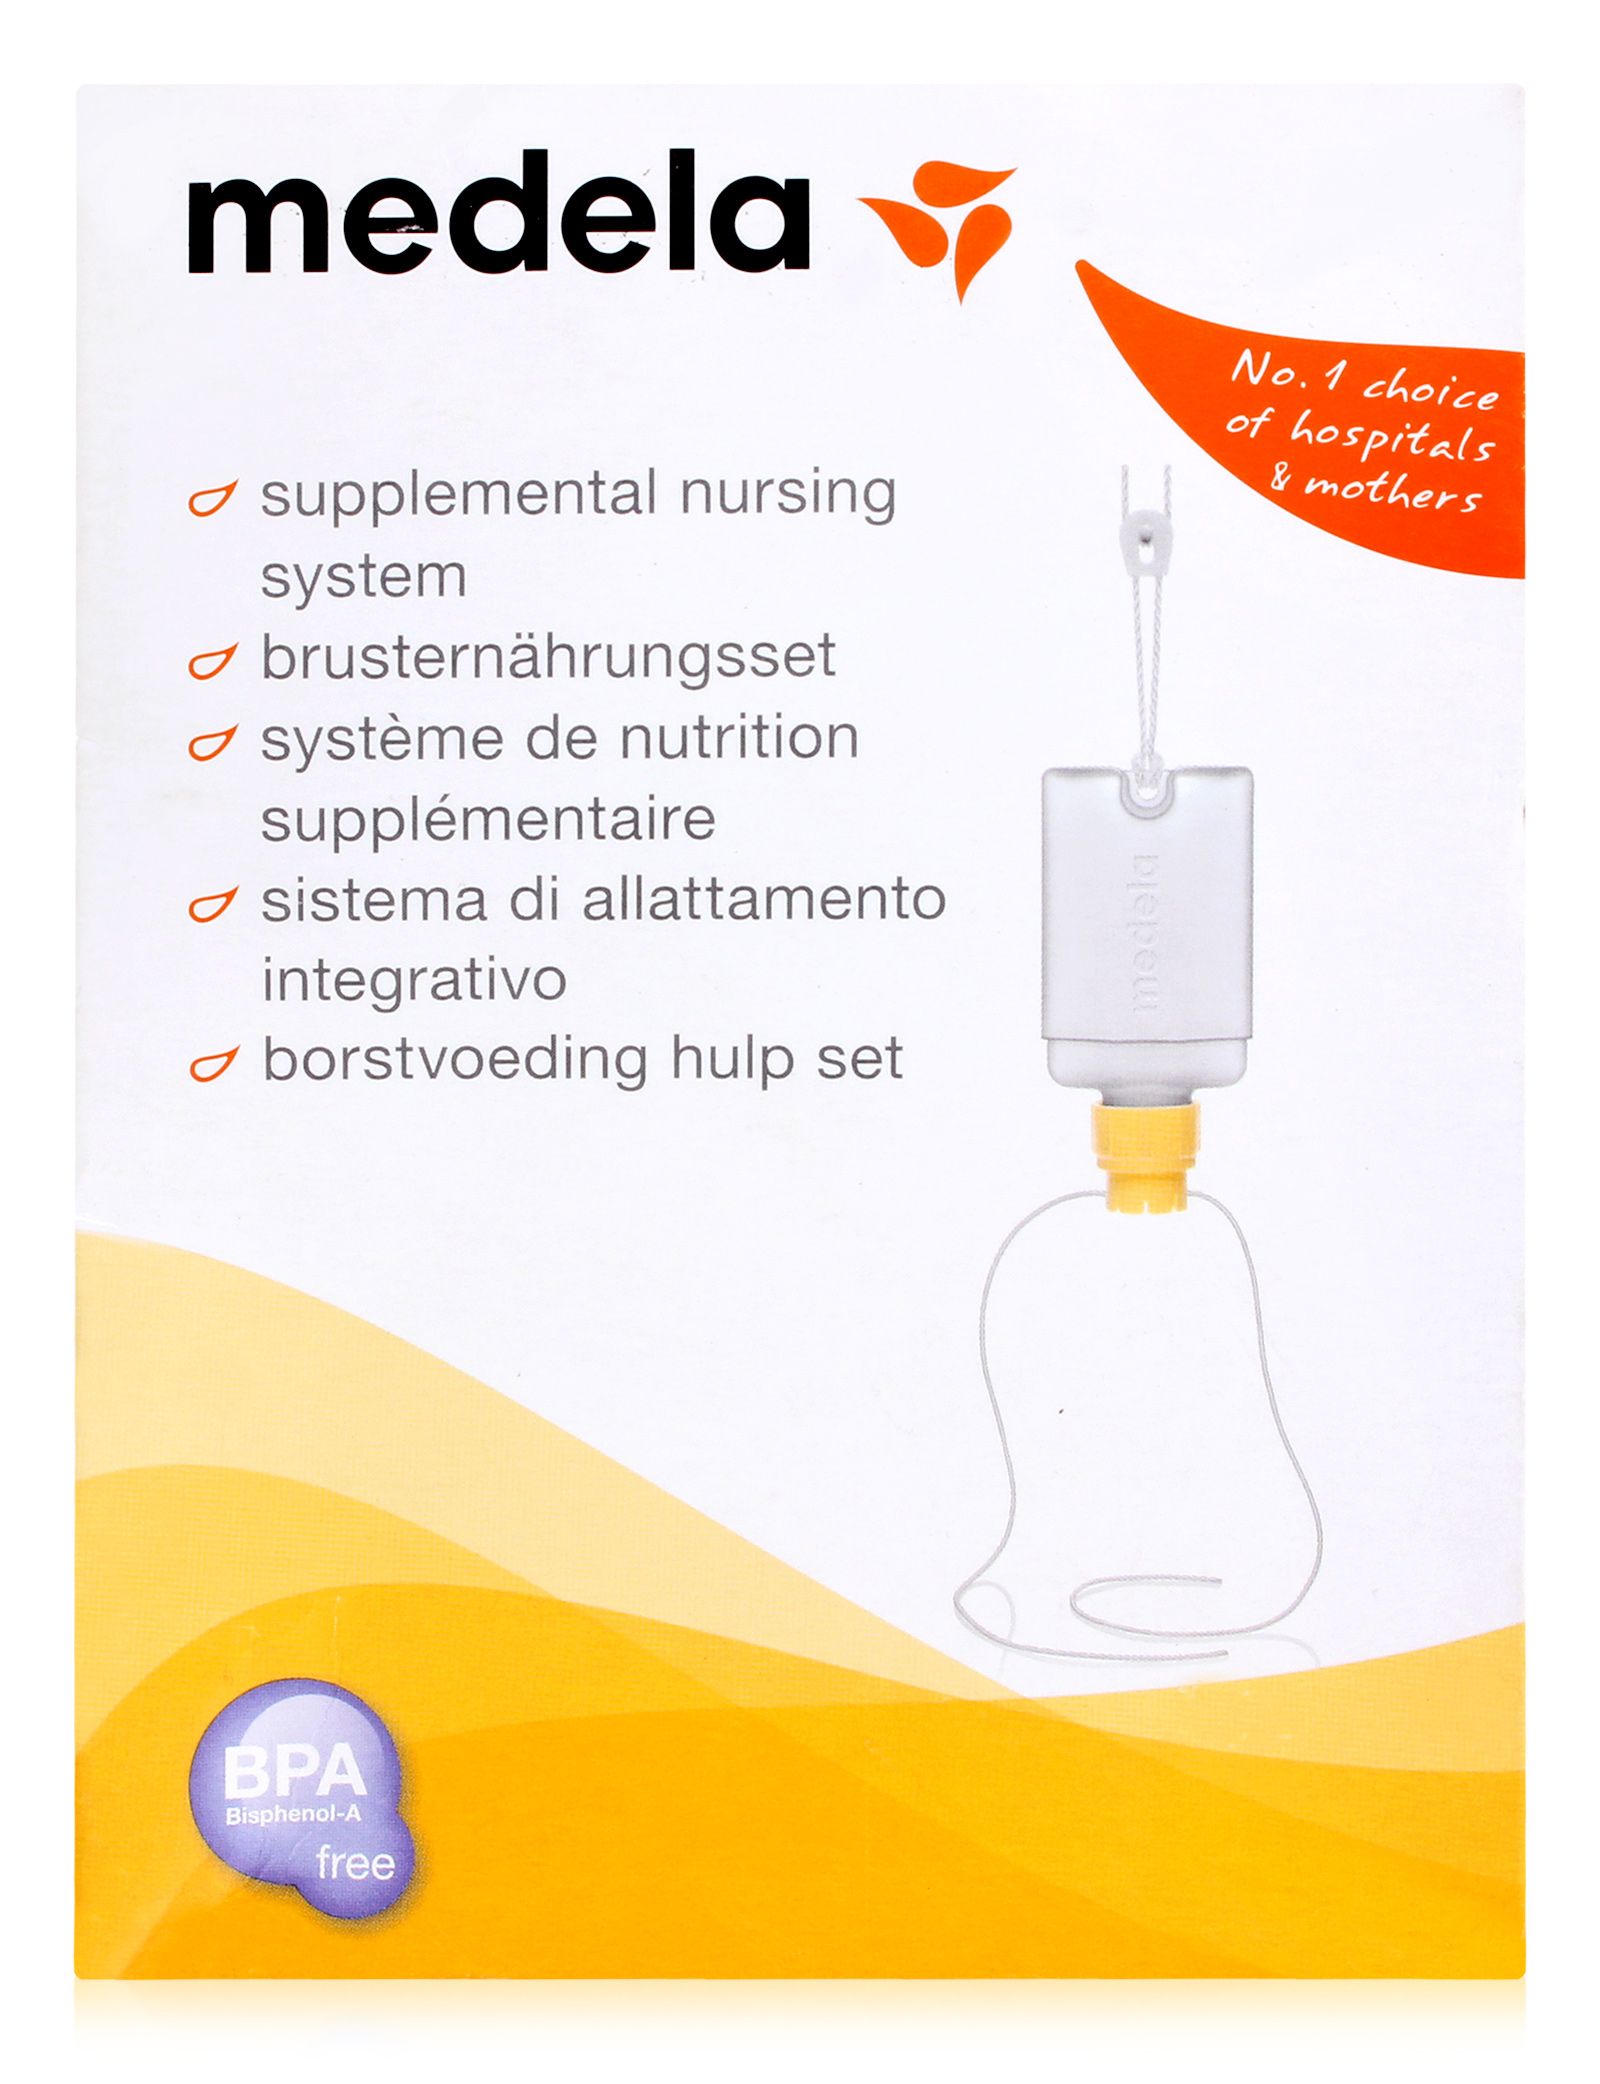 Medela - Supplemental Nursing System